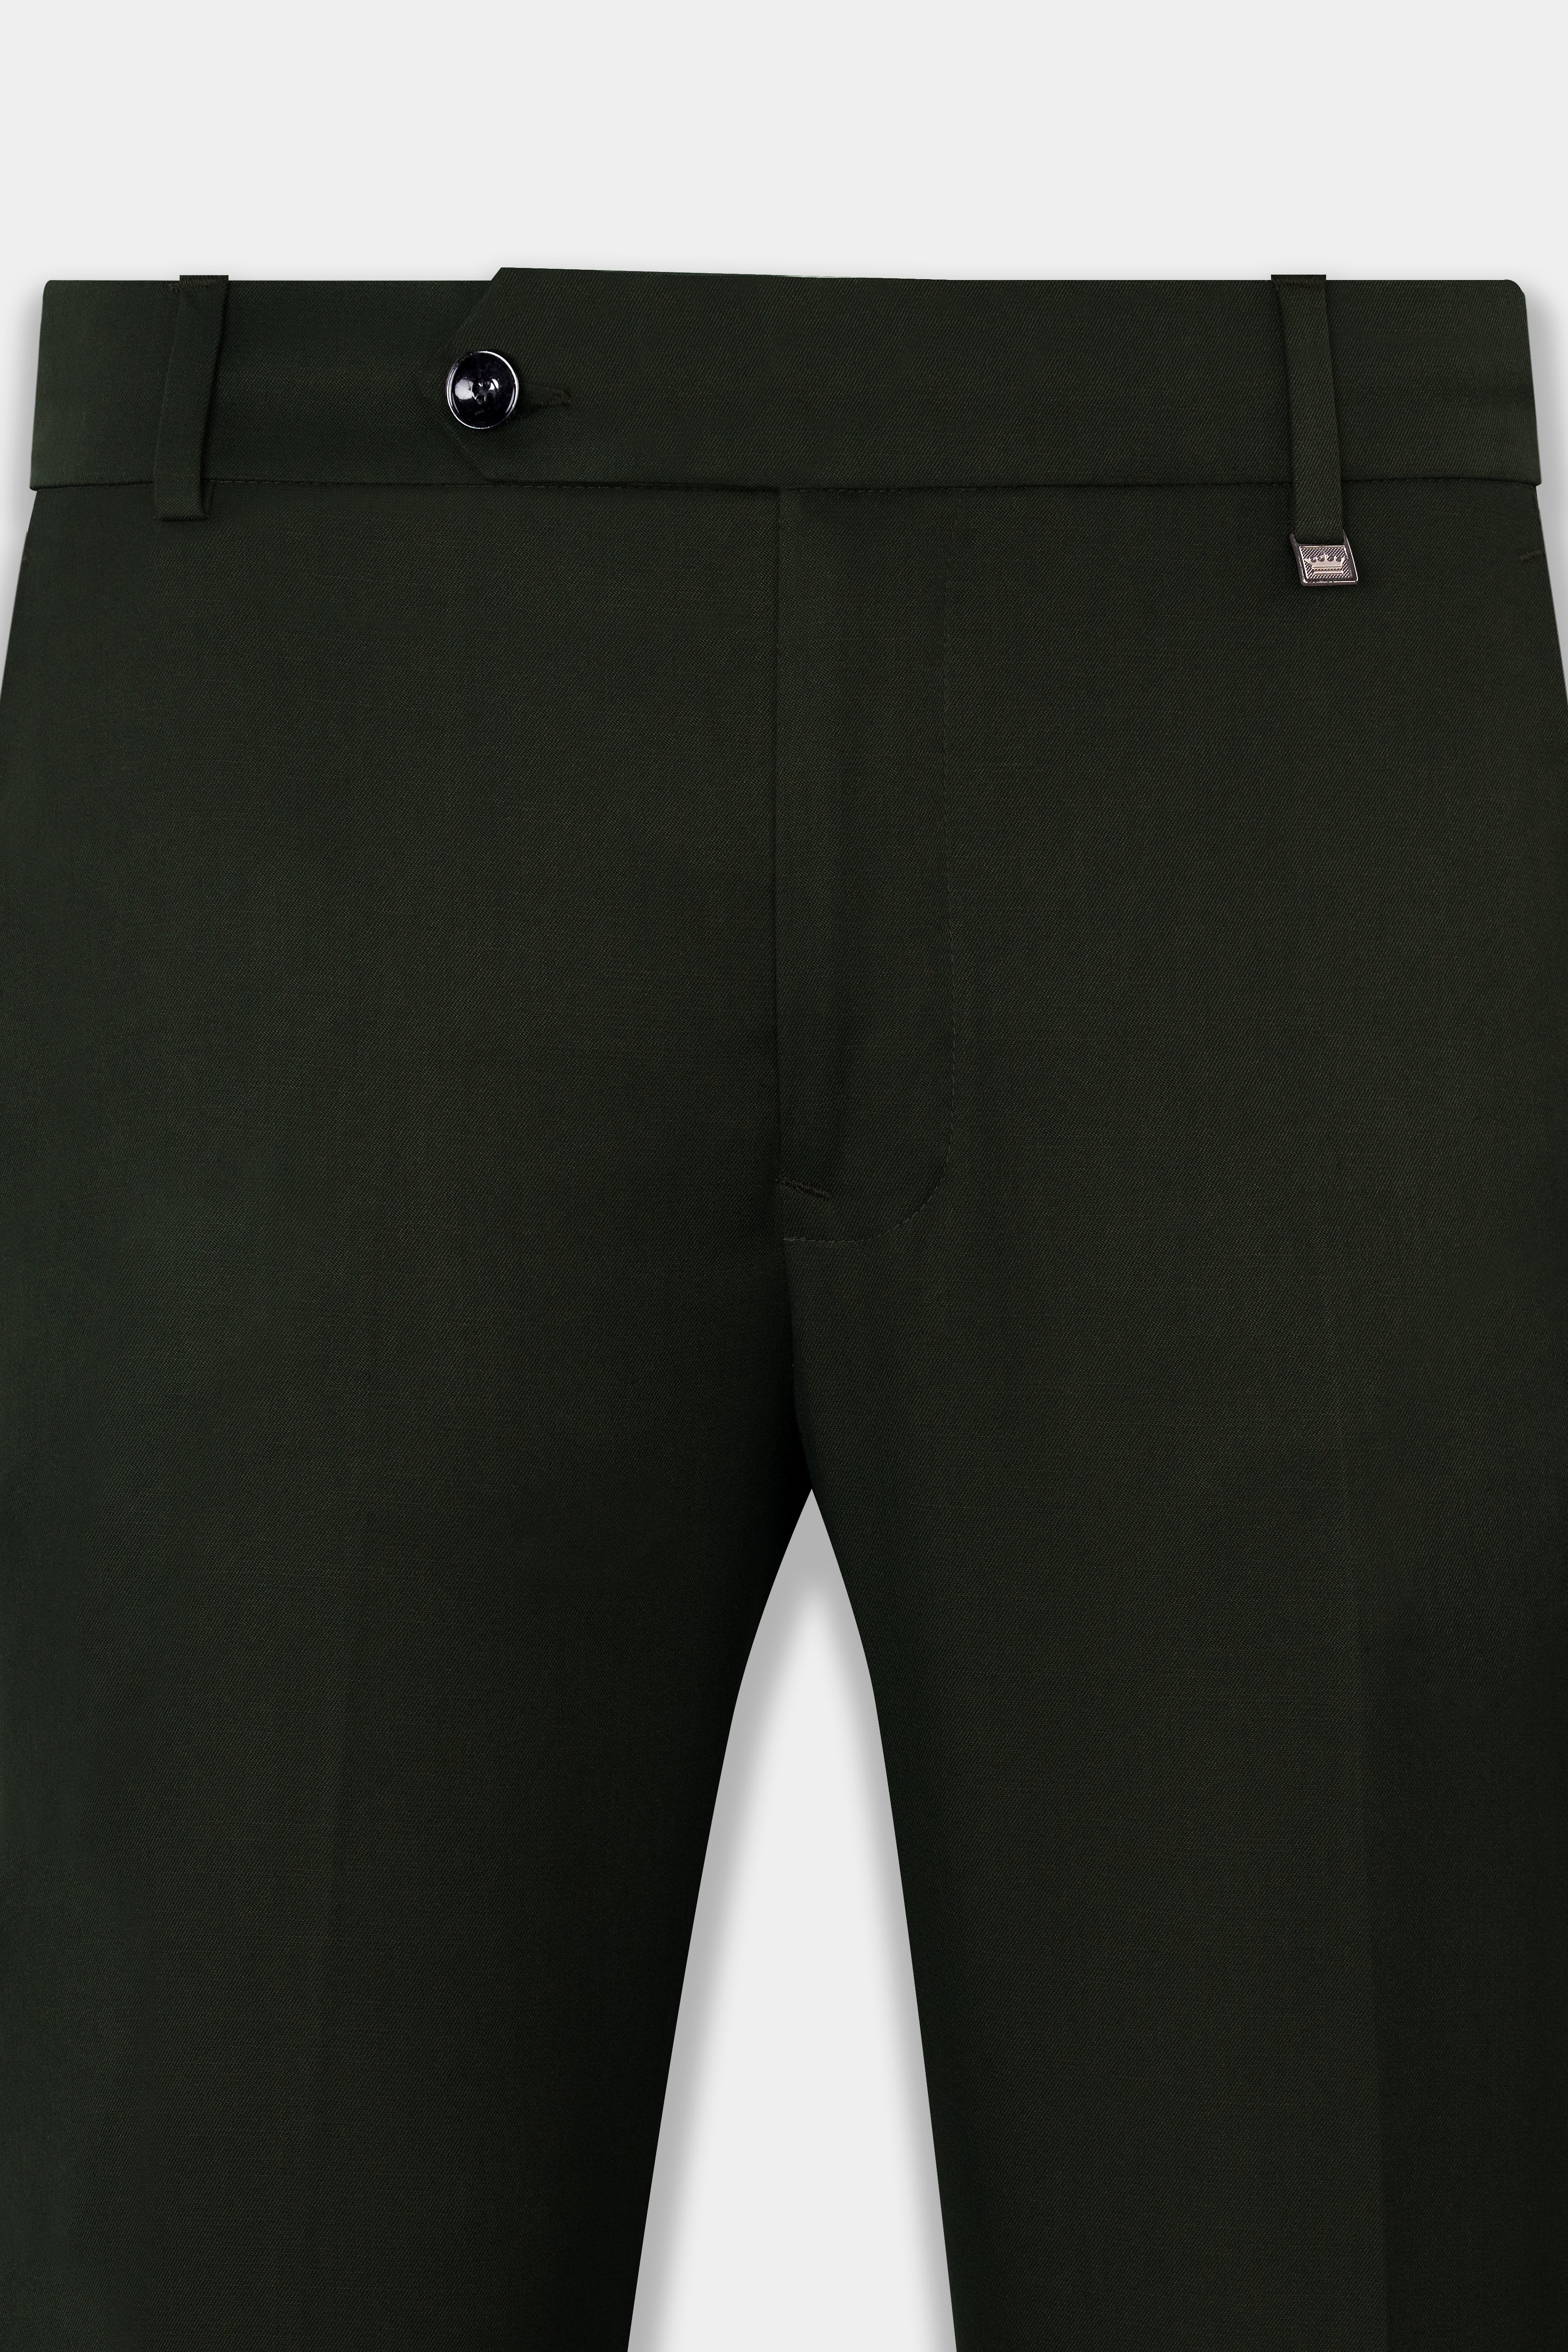 Rangoon Green Wool Rich Bandhgala Designer Suit ST2807-D1-36, ST2807-D1-38, ST2807-D1-40, ST2807-D1-42, ST2807-D1-44, ST2807-D1-46, ST2807-D1-48, ST2807-D1-50, ST2807-D1-52, ST2807-D1-54, ST2807-D1-56, ST2807-D1-58, ST2807-D1-60